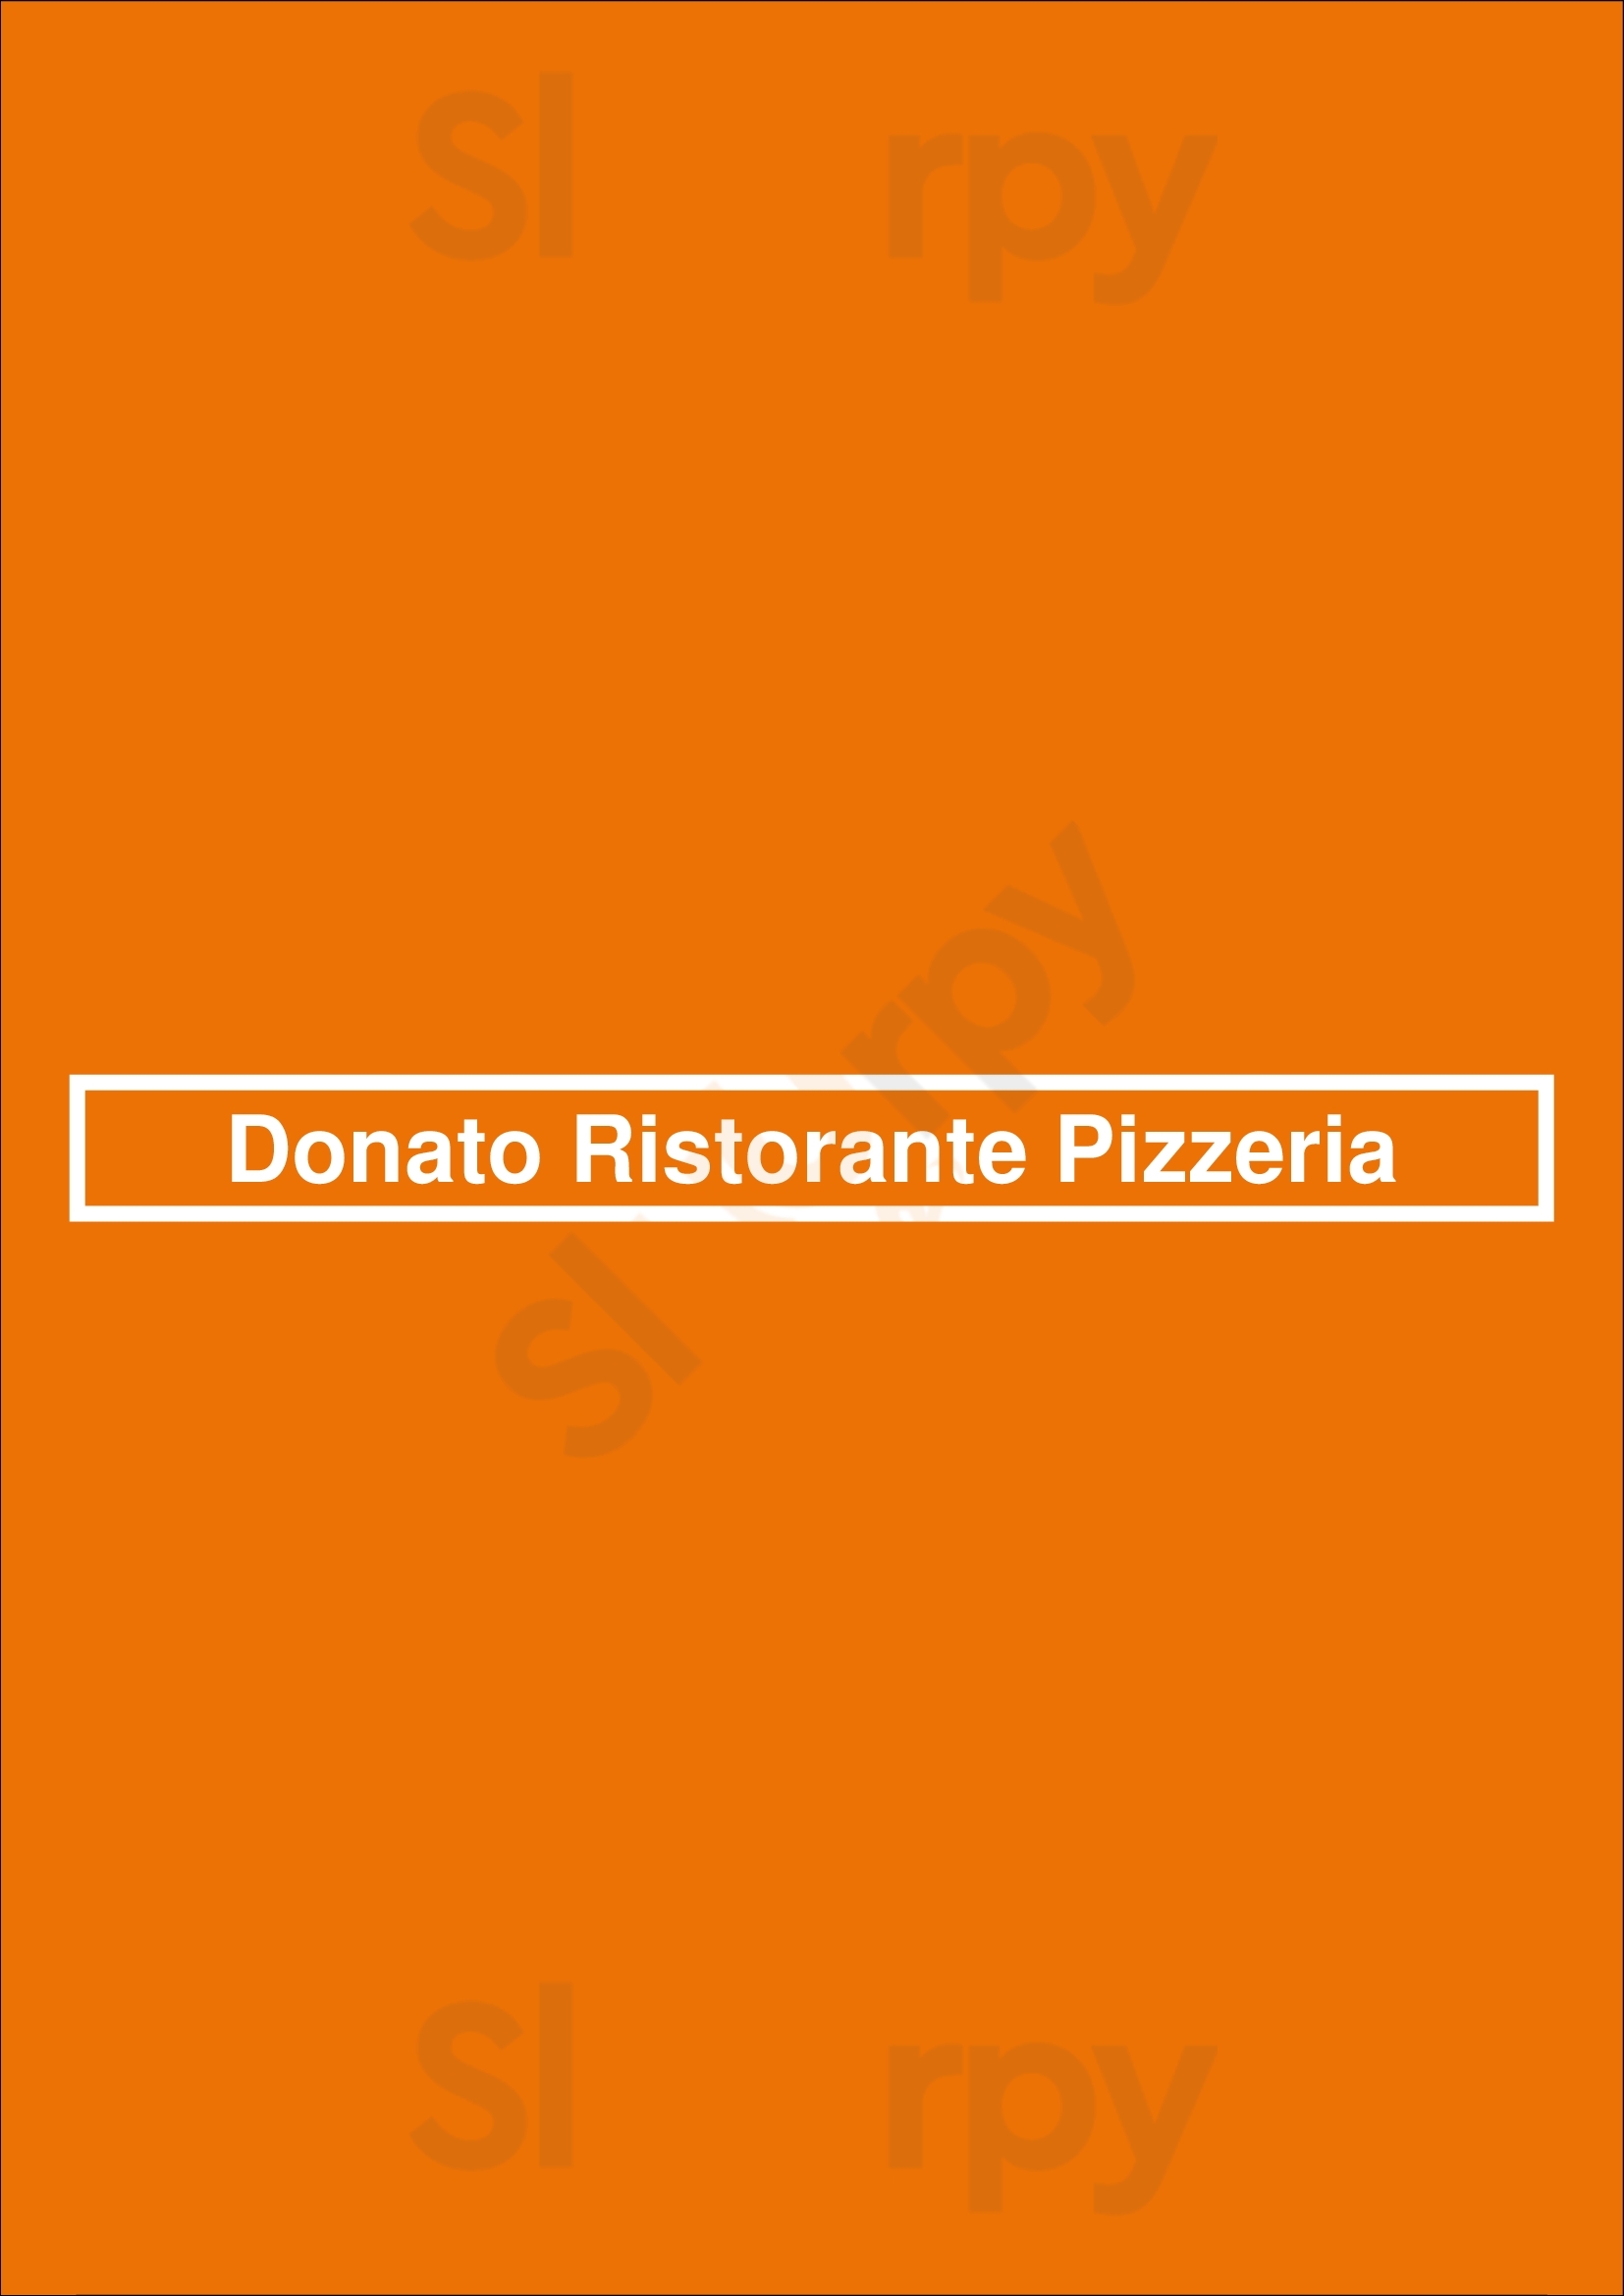 Donato Ristorante Pizzeria Den Haag Menu - 1